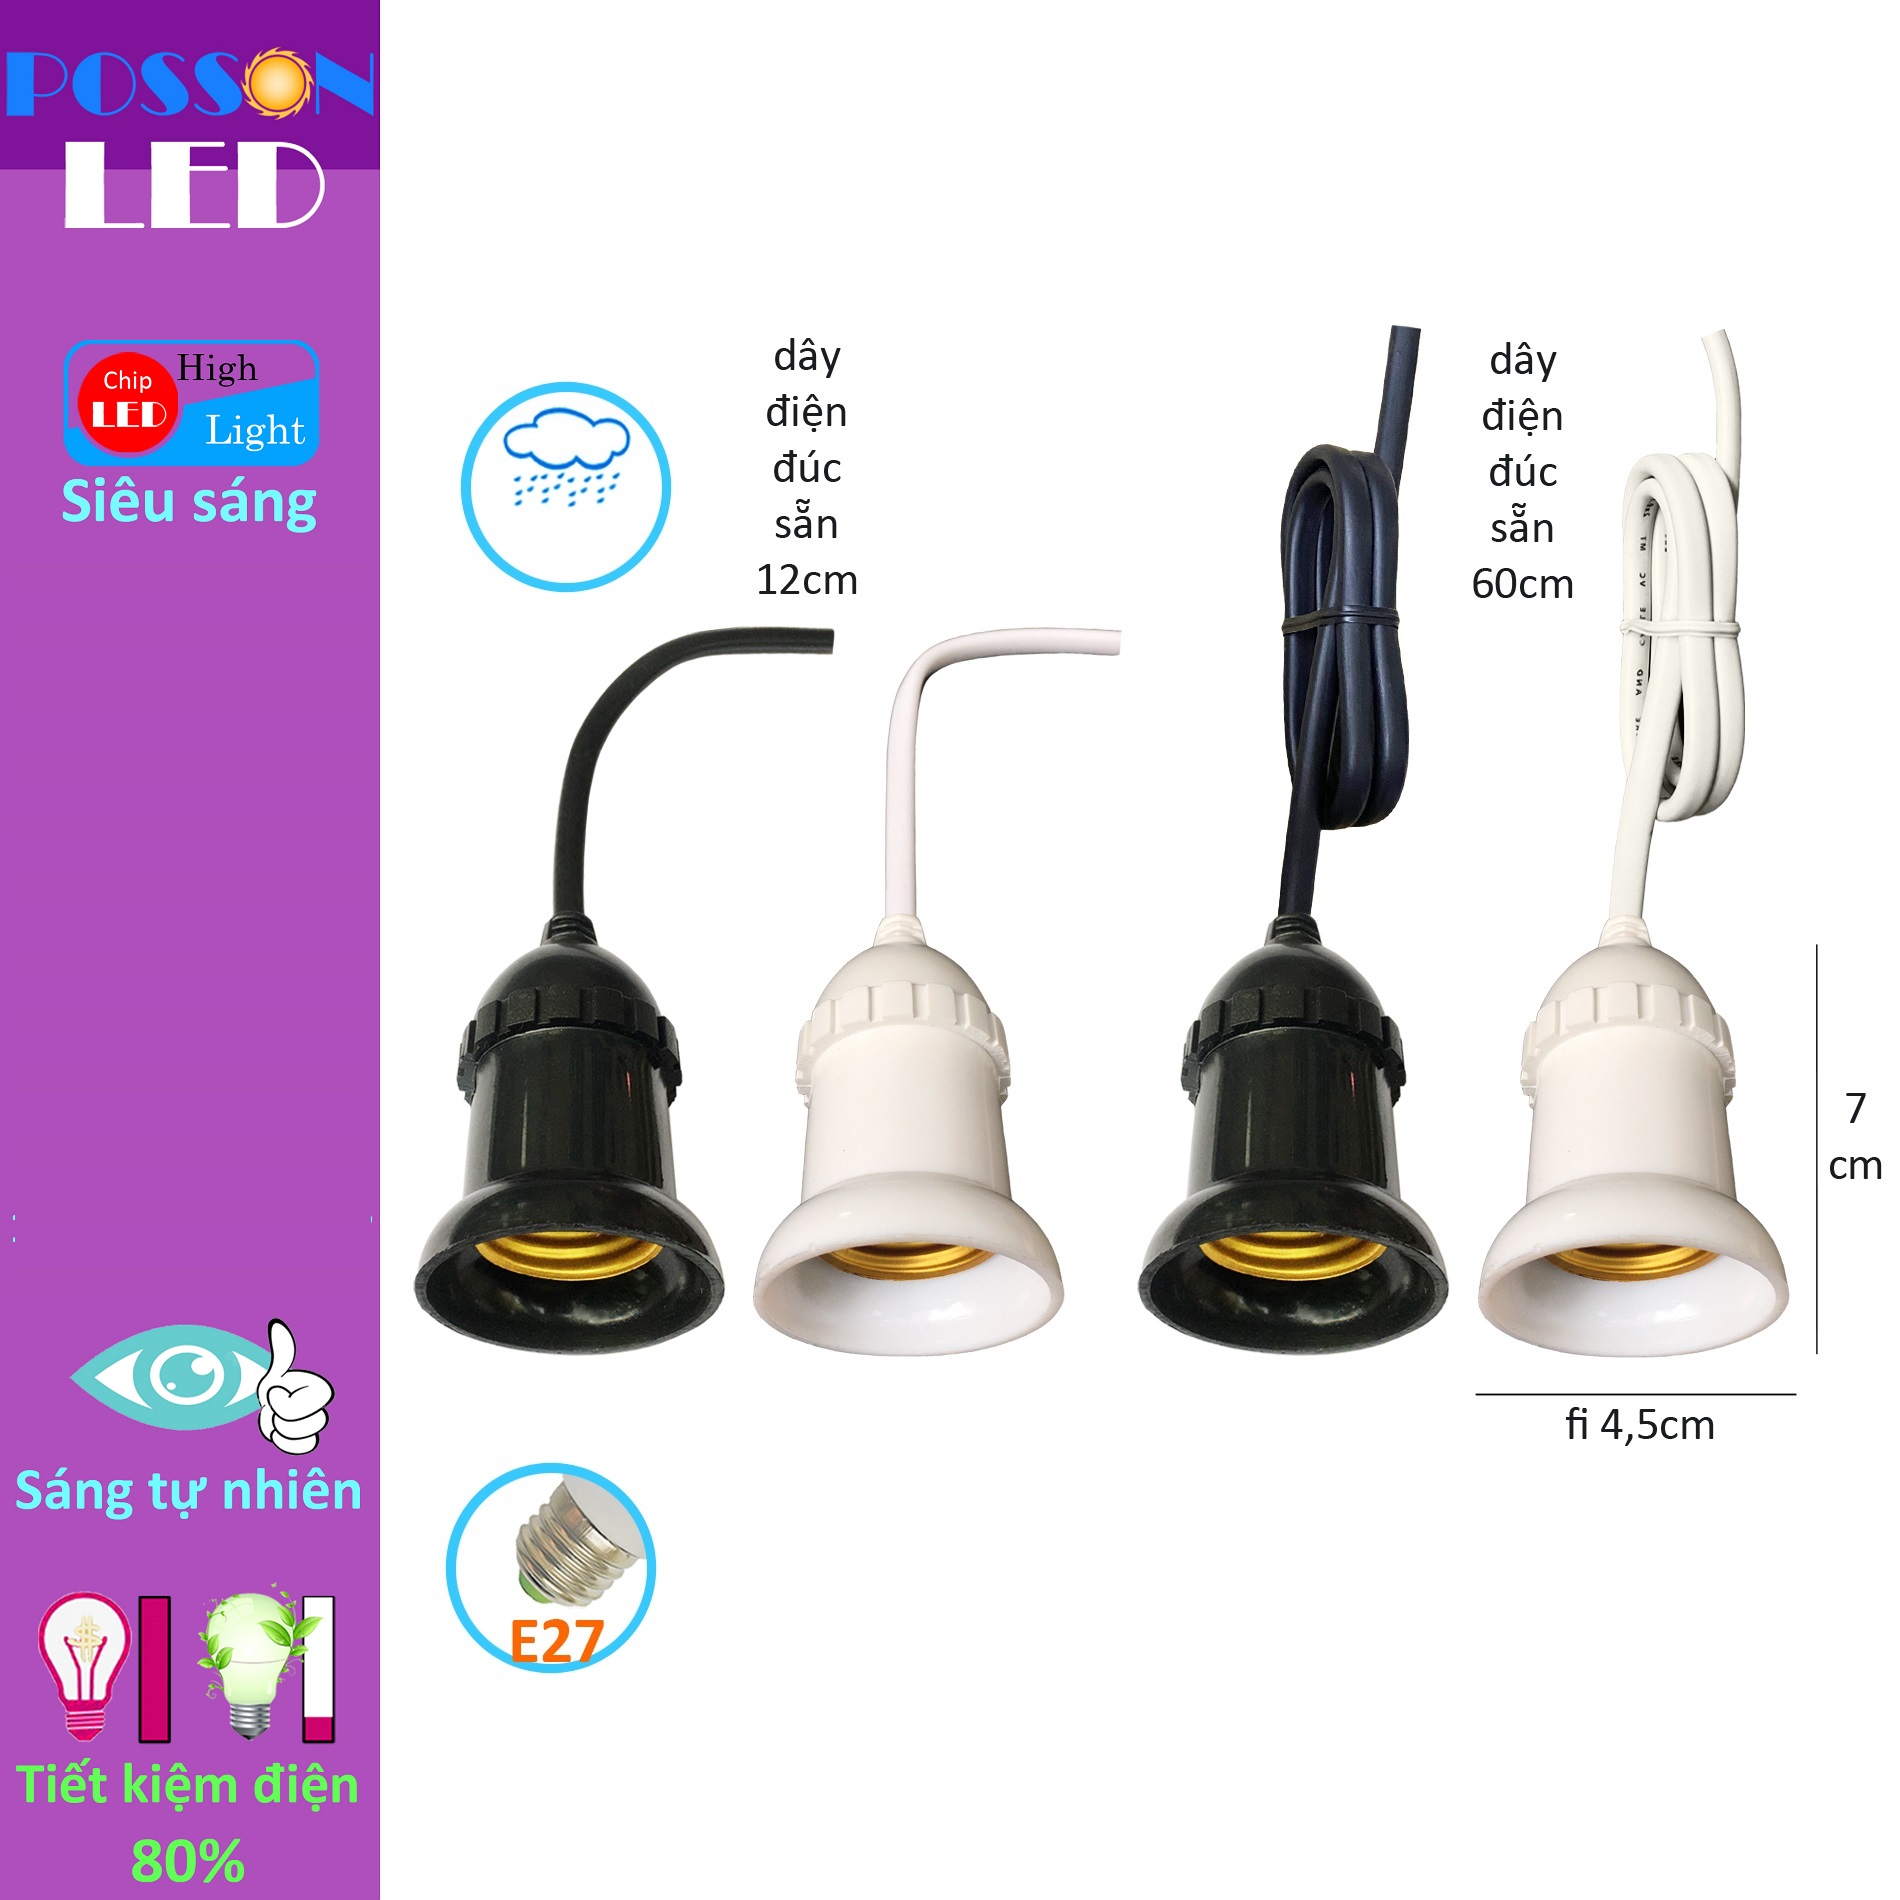 10 Đui chuôi đèn chống nước mưa E27 đuôi xoáy 27mm treo trang trí ngoài trời LH-ODx